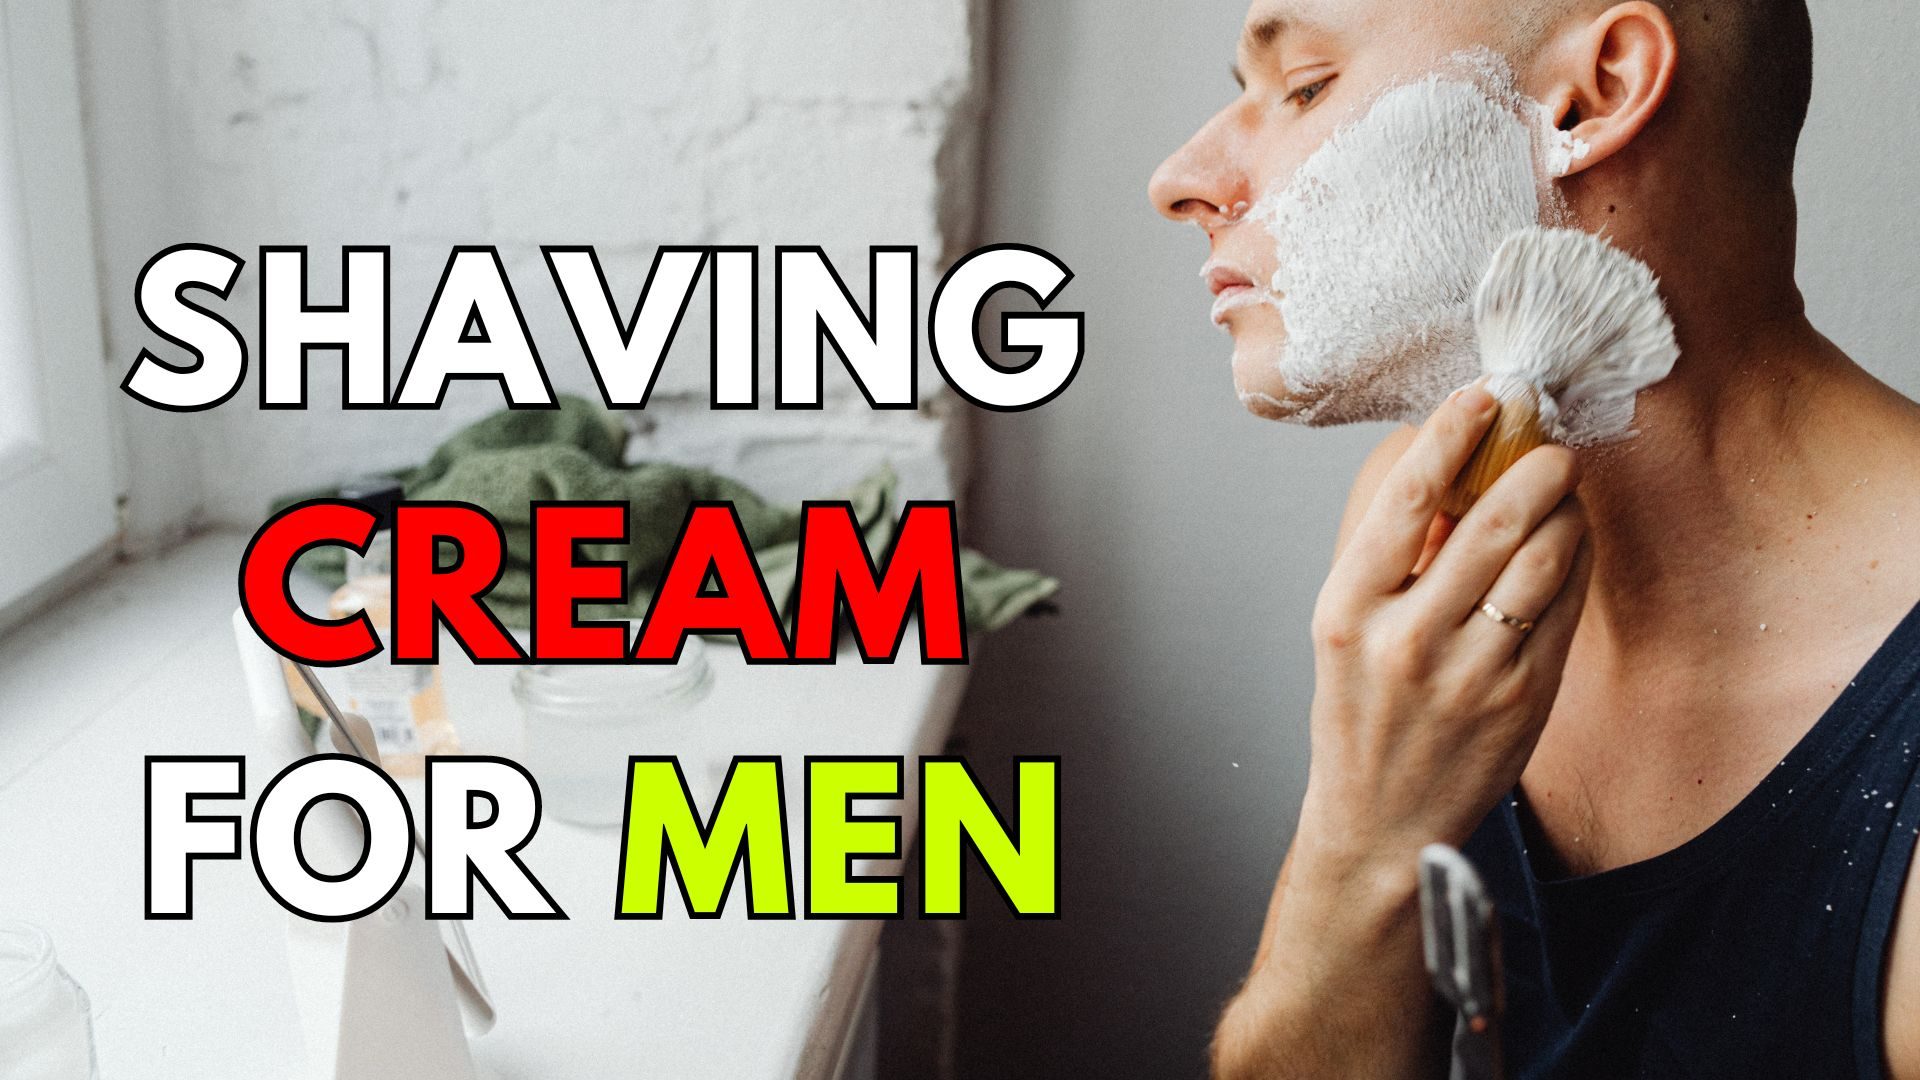 Shaving cream for men